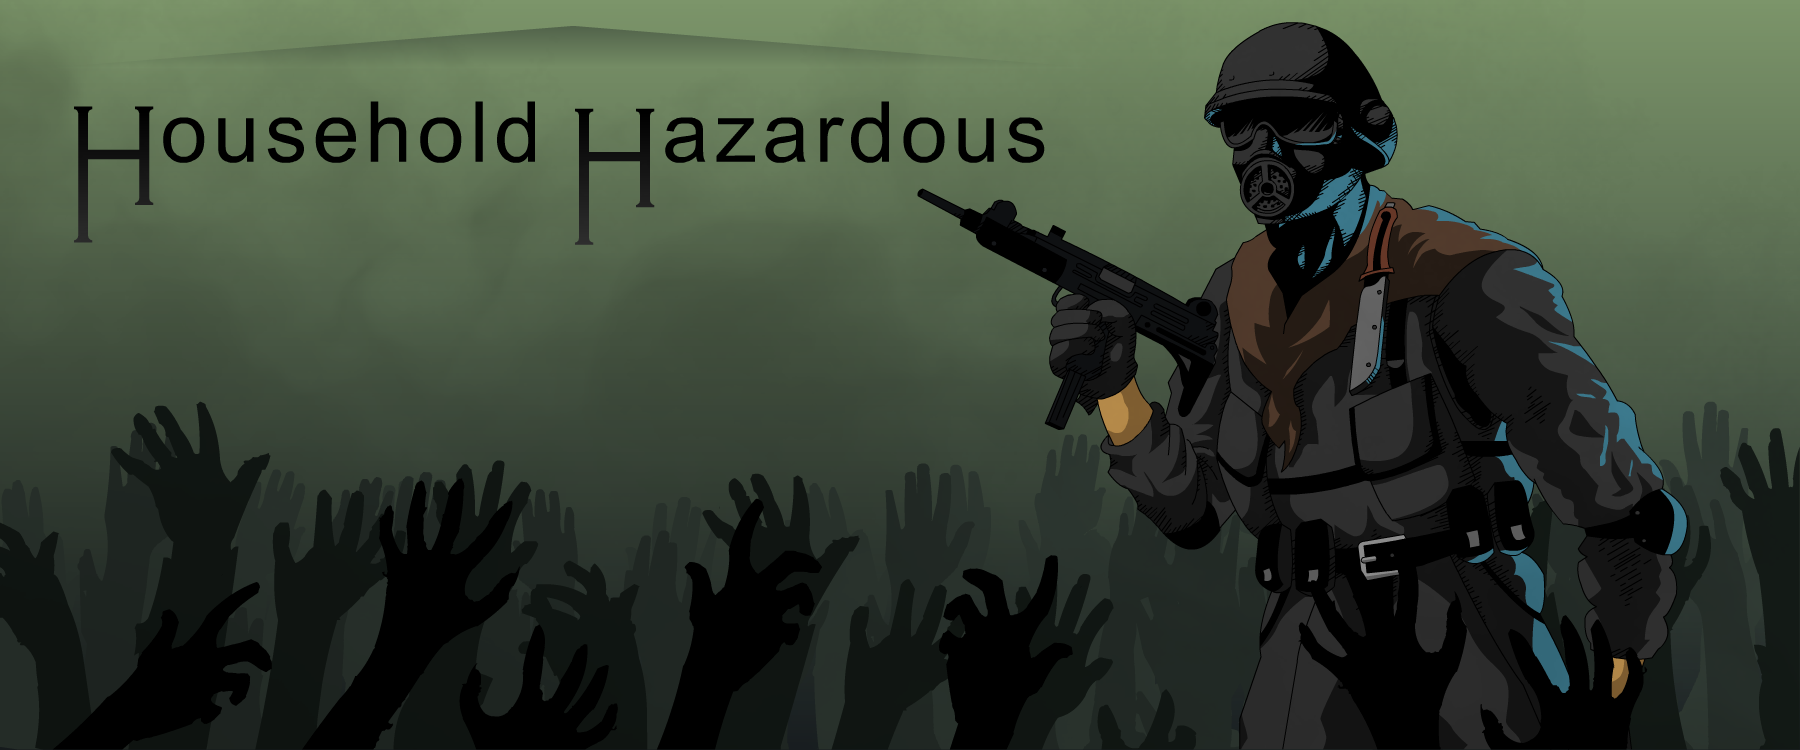 Household Hazardous zombies